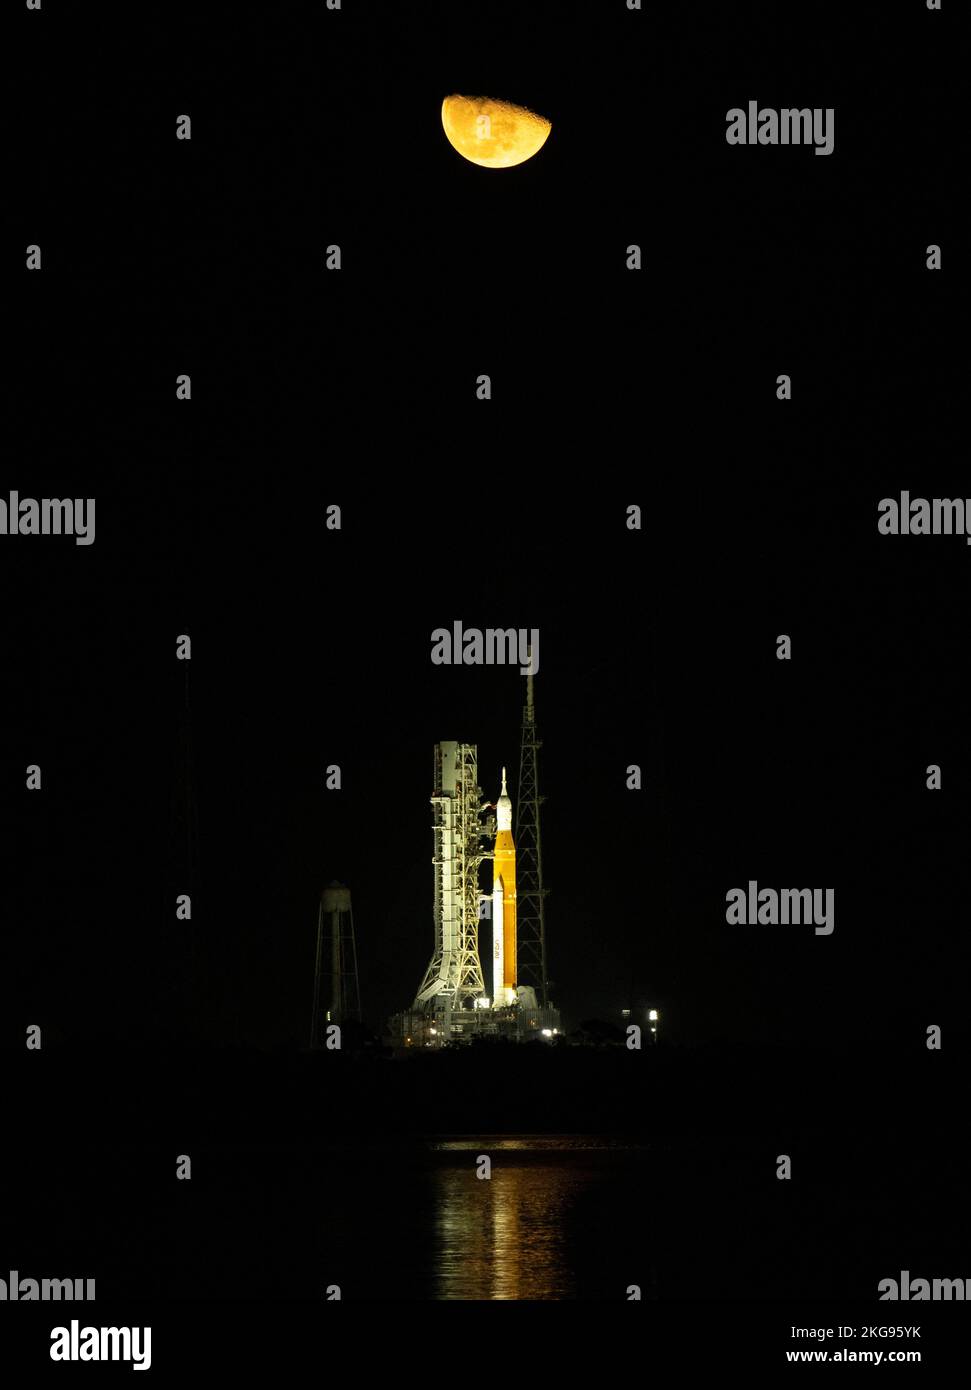 KENNEDY SPACE ce|NTRE, FLORIDE, États-Unis - 16 novembre 2022 - la Lune s'élève au-dessus de la fusée SLS (Space Launch System) de la NASA avec l'Orion spacetra Banque D'Images